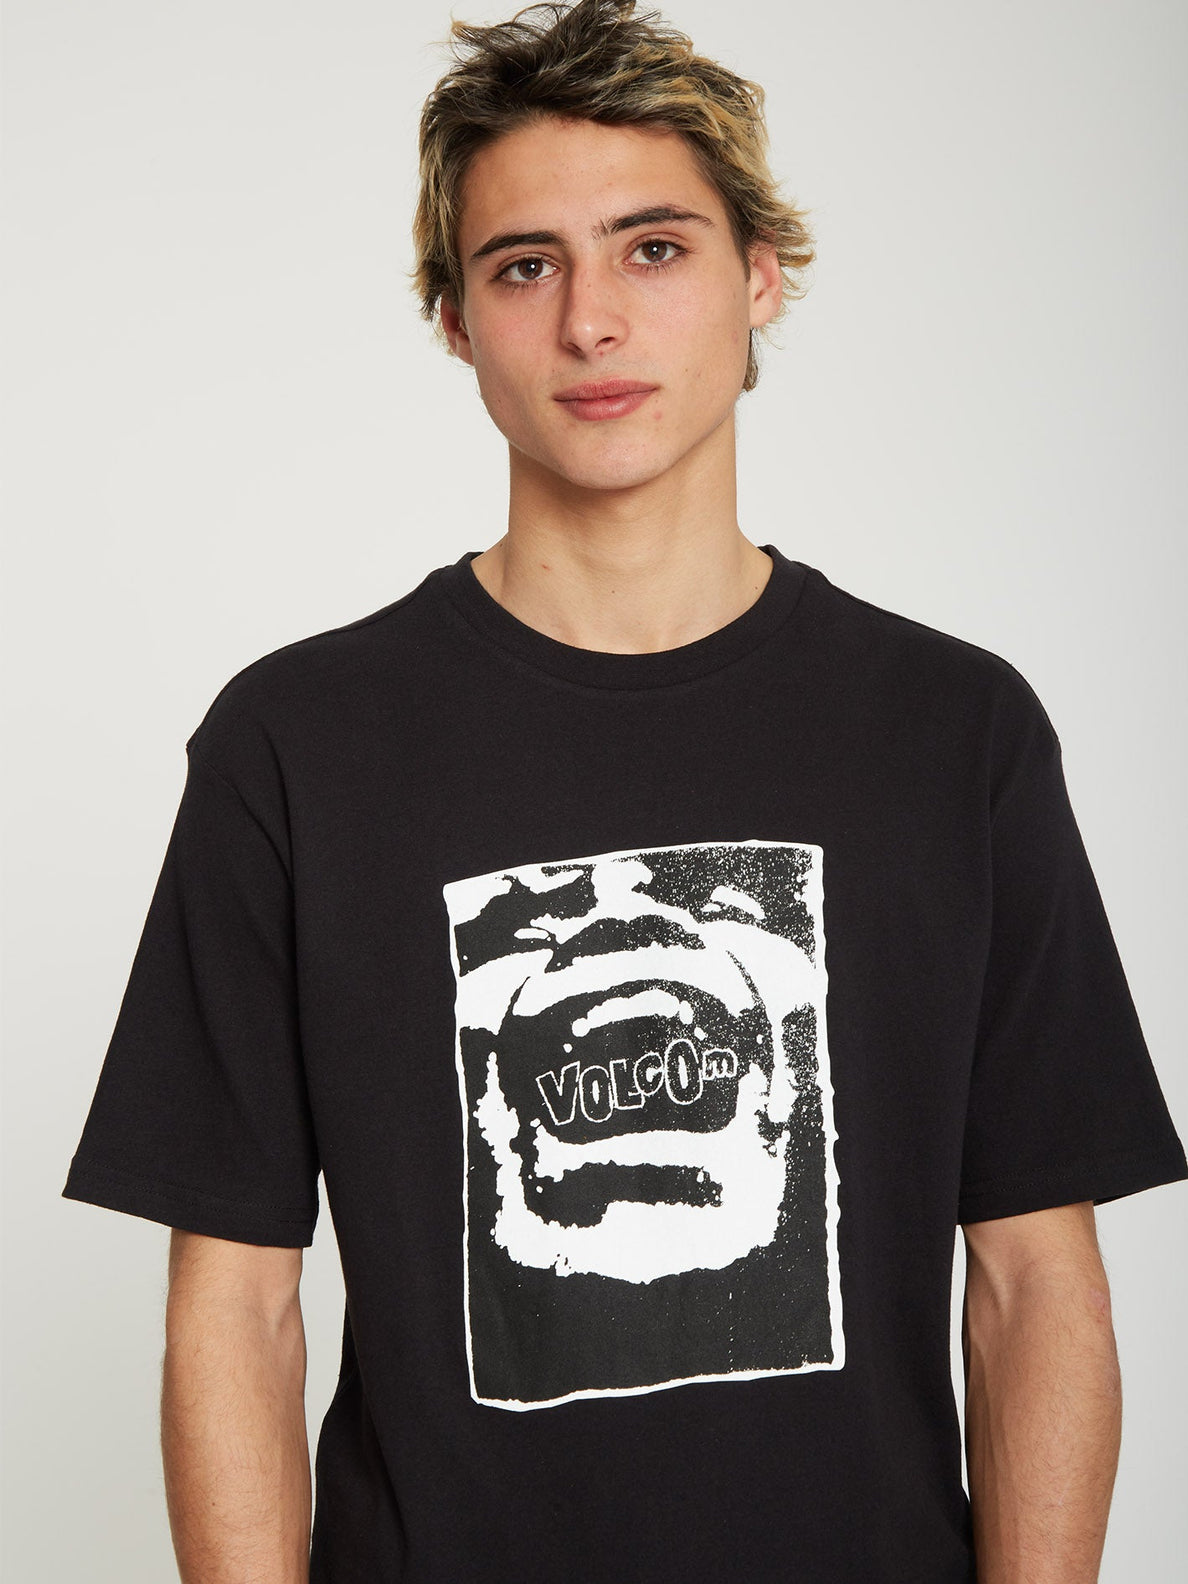 Yeller T-shirt - BLACK (A4312209_BLK) [140]